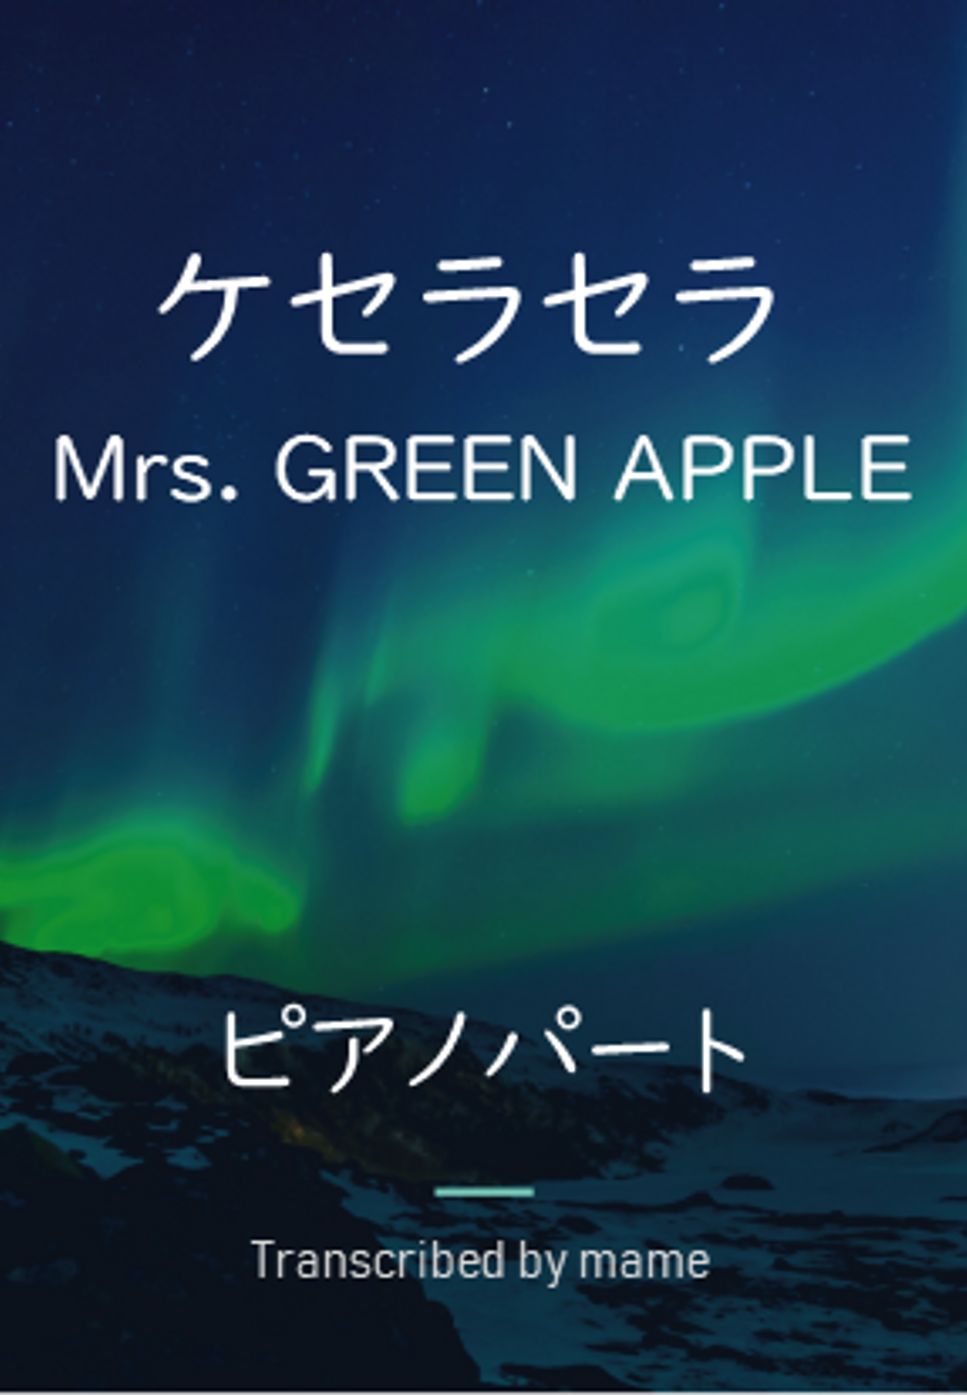 Mrs. GREEN APPLE - ケセラセラ (キーボードパート) by mame